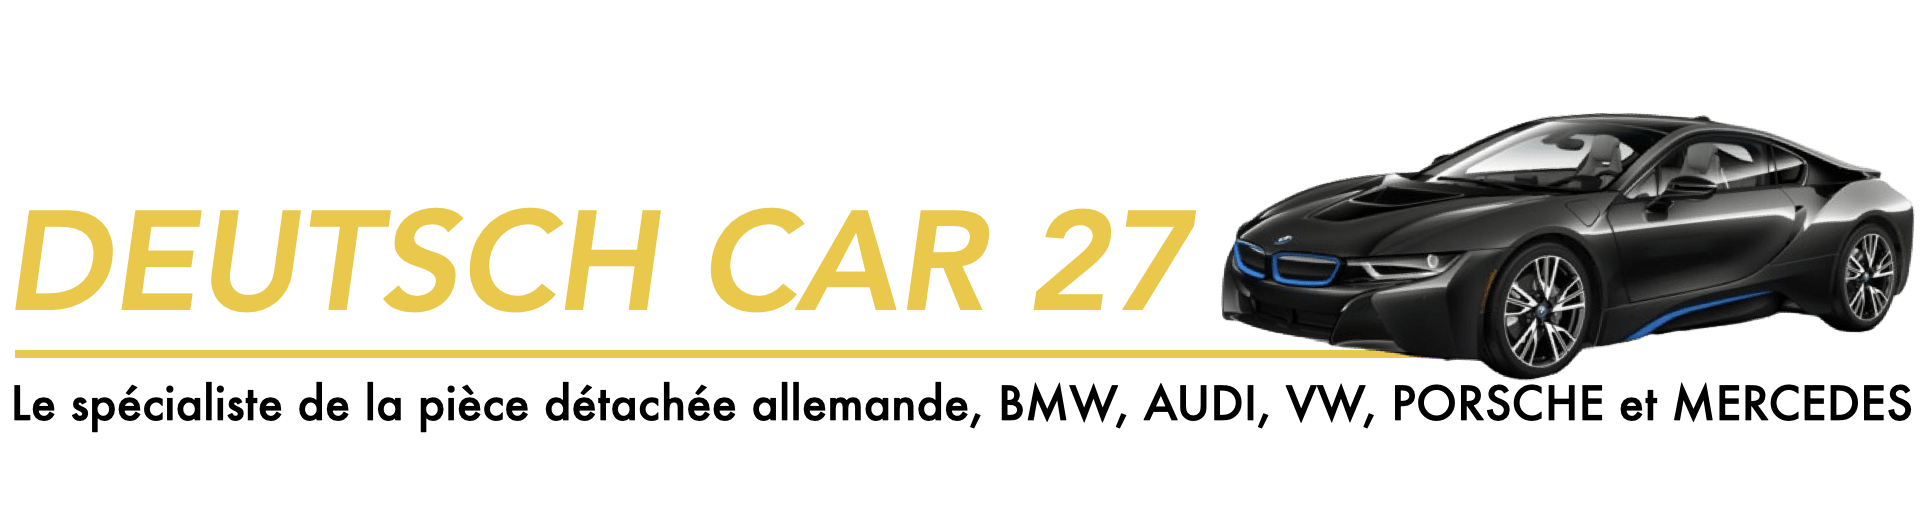 Logo Deutsch Car 27 Votre spécialiste de la pièce détachée pour voitures allemandes BMW, Audi, Volkswagen, Porsche et Mercedes